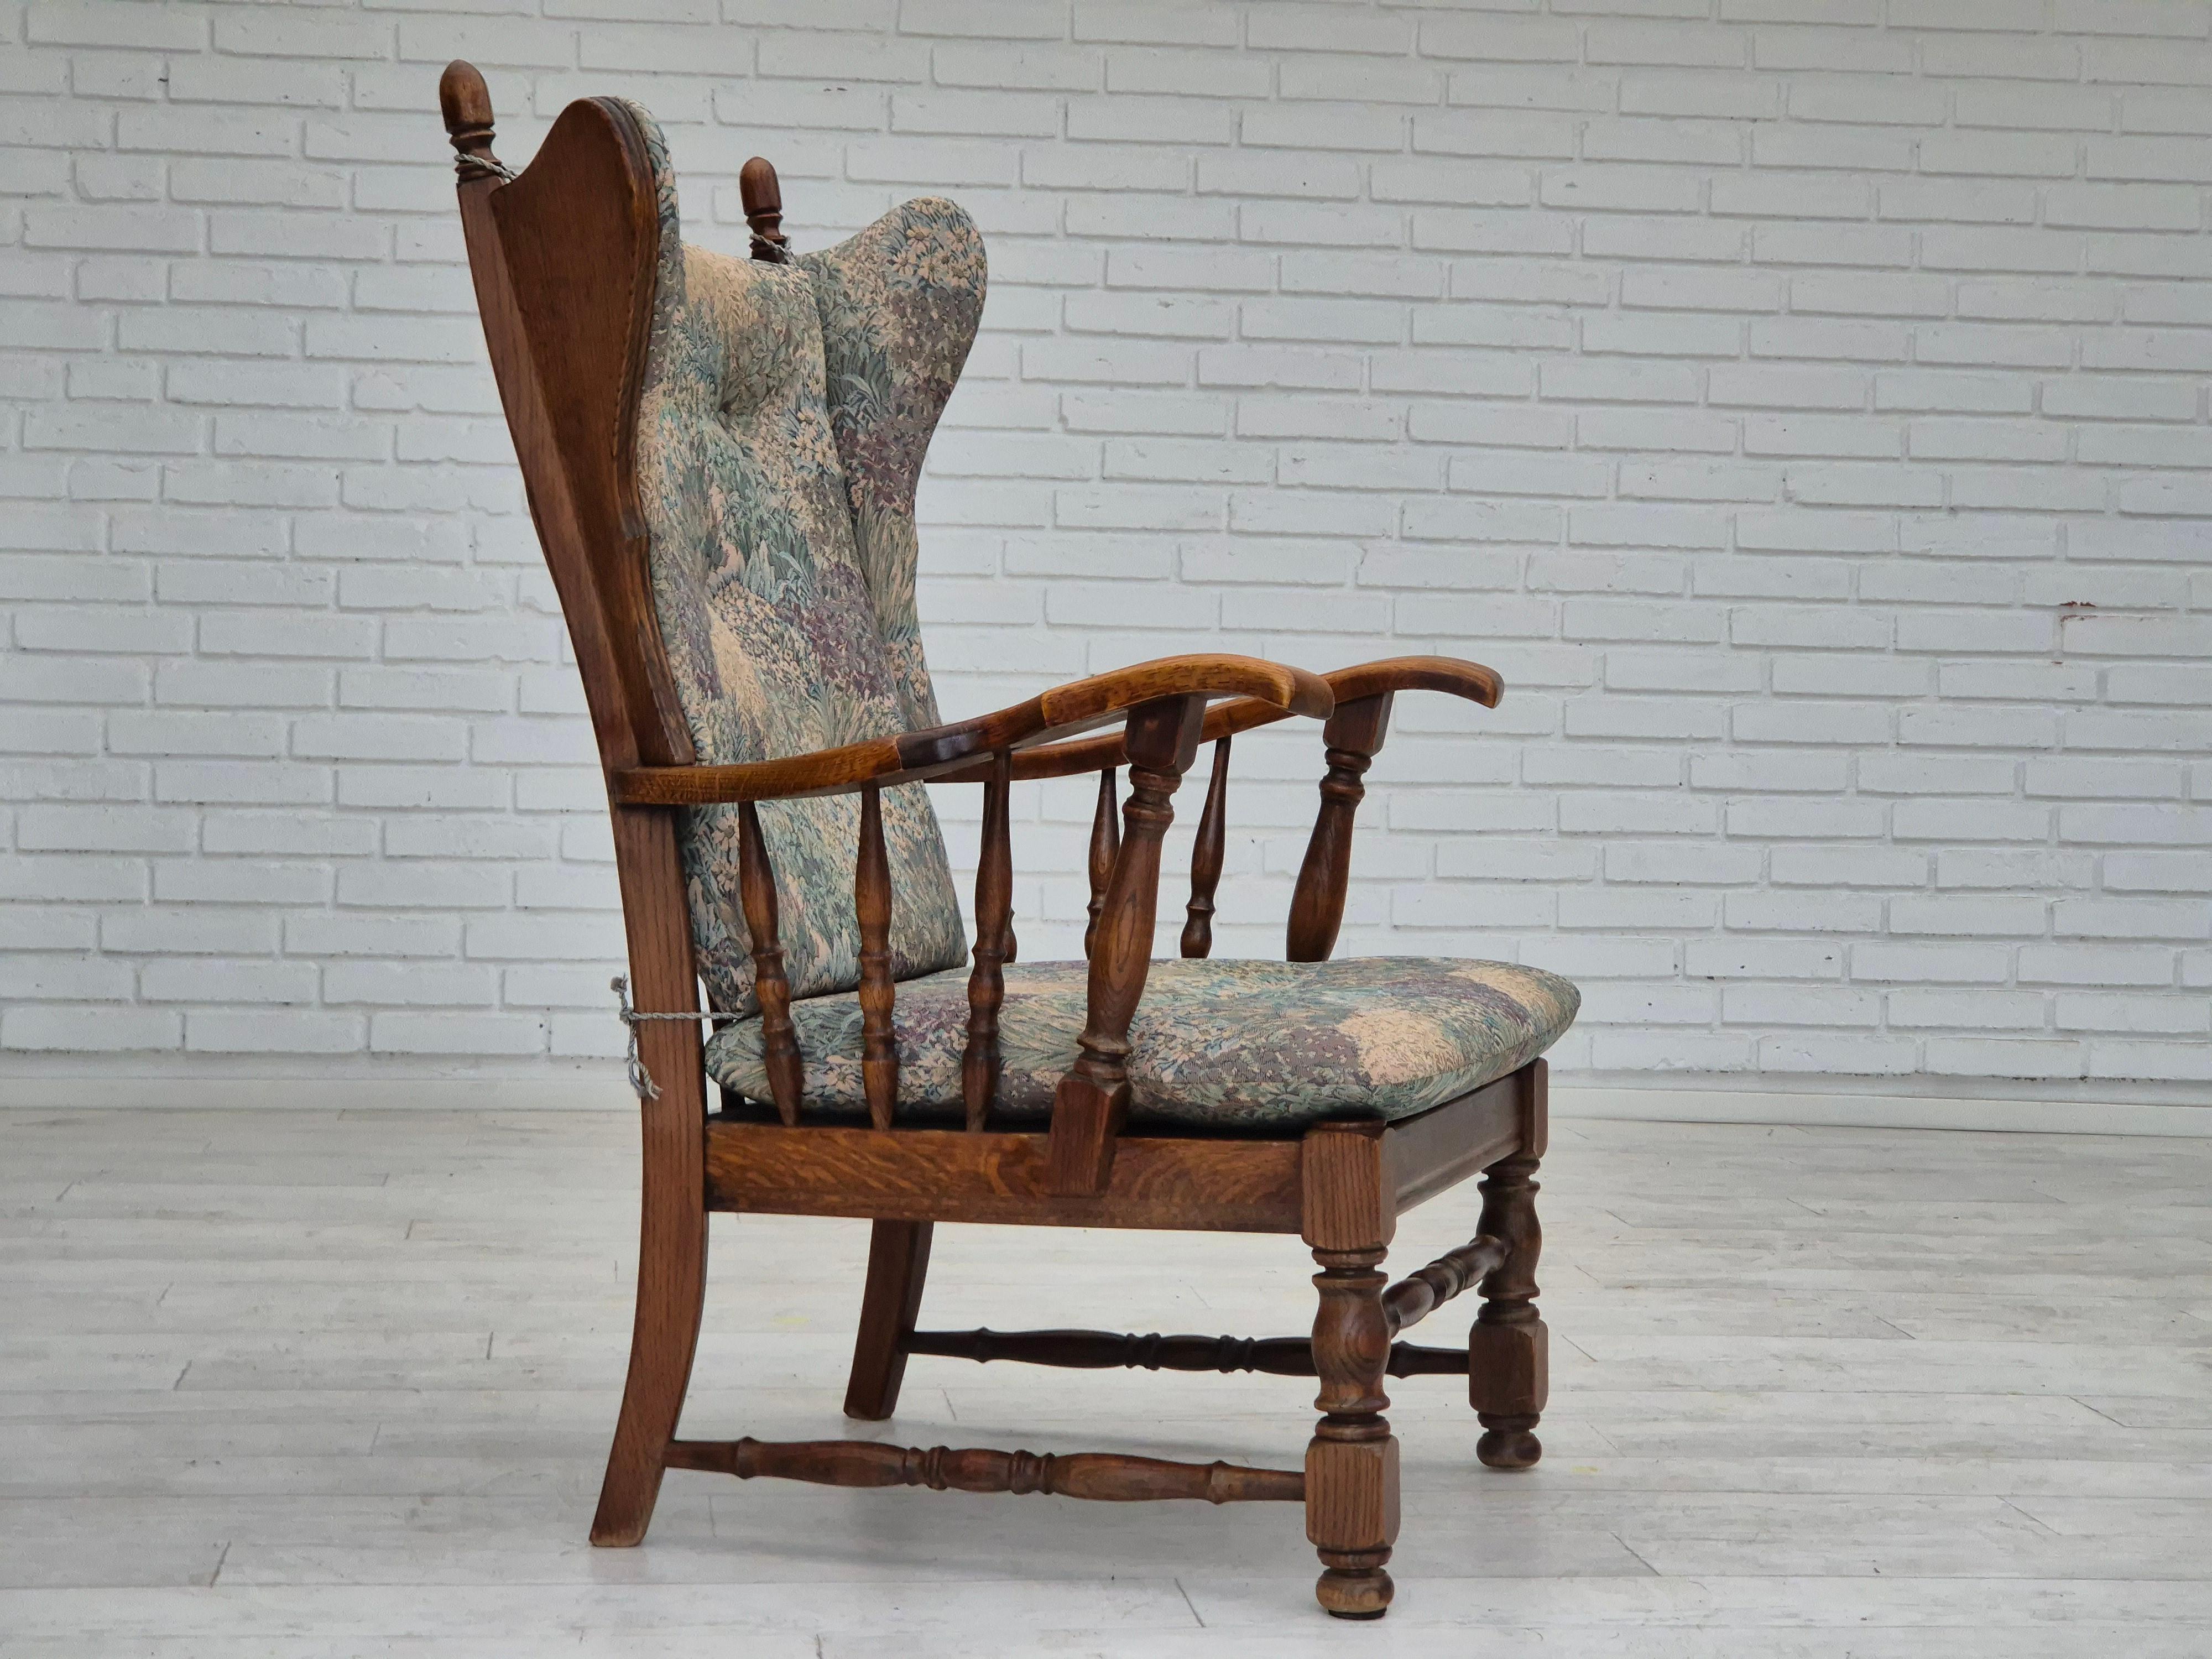 Années 1960, design danois, fauteuil à dossier haut de Regan Møbelfabrik, Aarhus. Très bon état d'origine : pas d'odeurs ni de taches. Meuble en tissu multicolore, bois de chêne. Fabriqué par un fabricant de meubles danois dans les années 1960. 